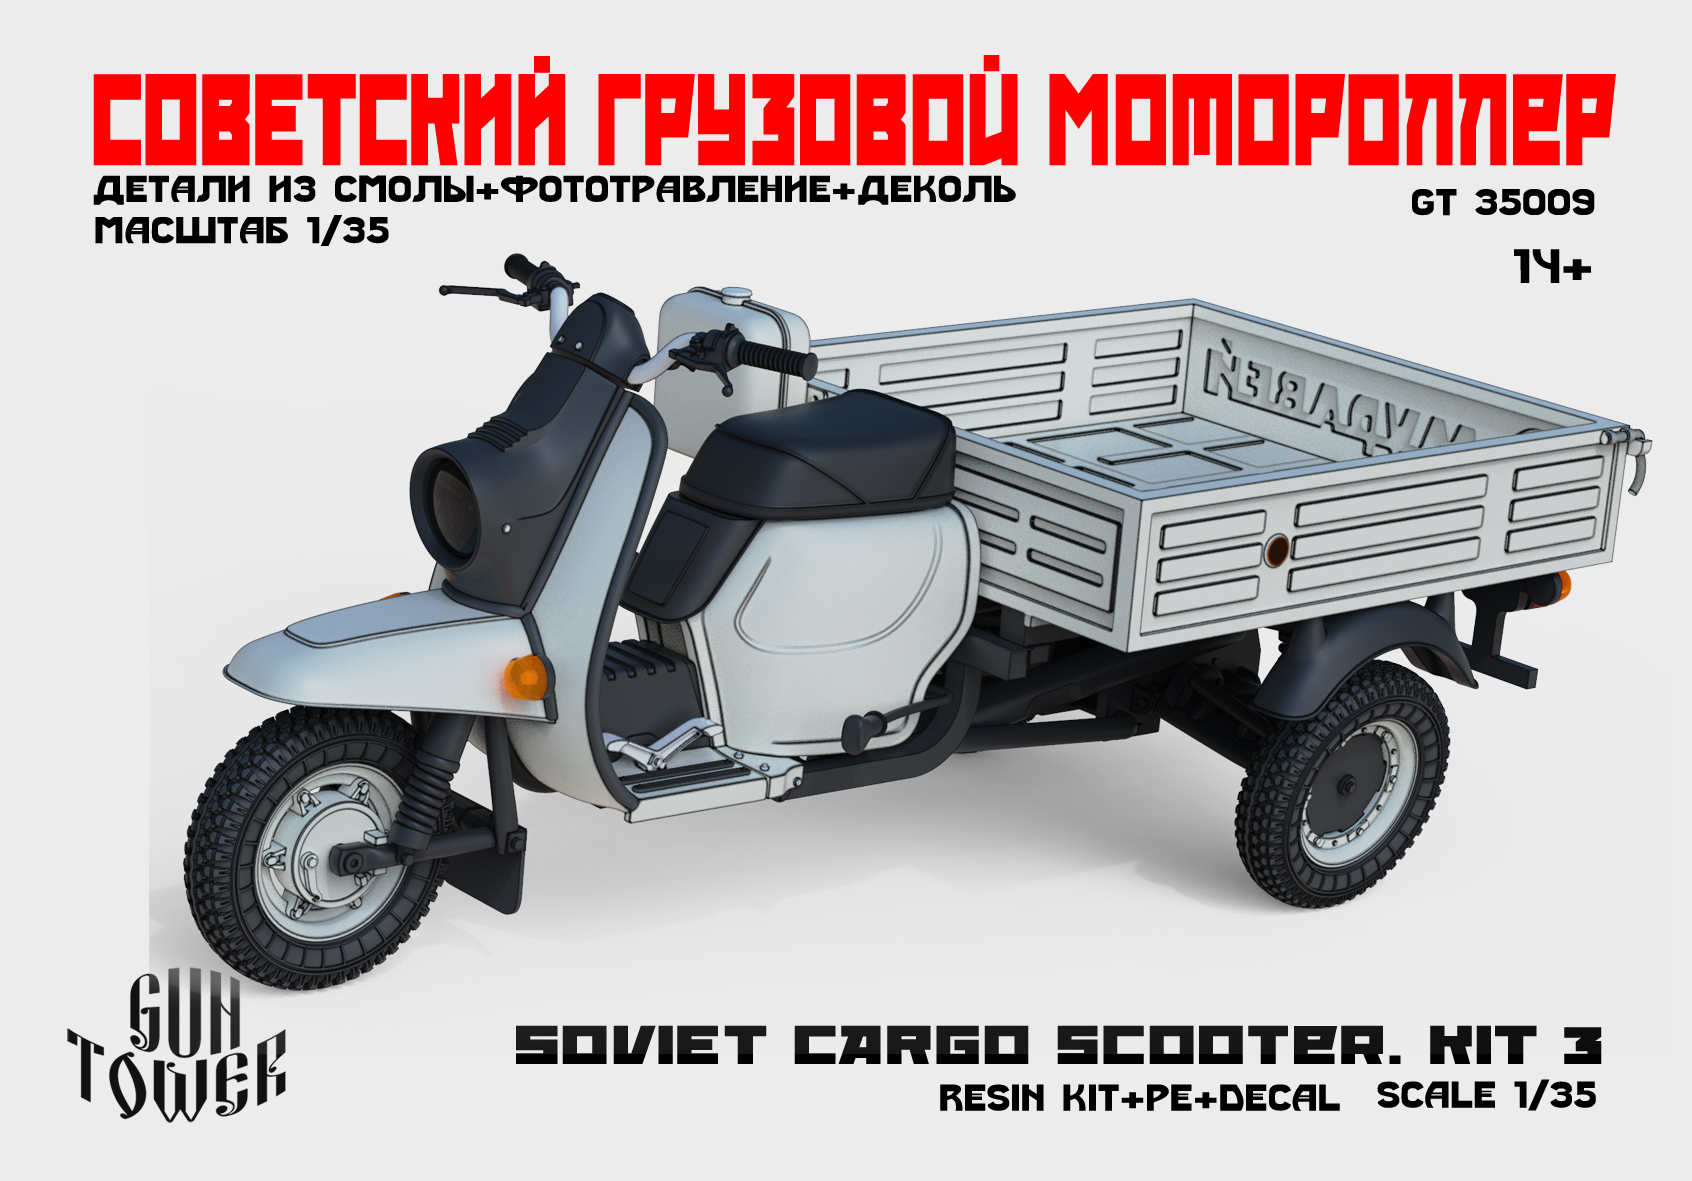 GT35009 Советский грузовой мотороллер. Кит 3.